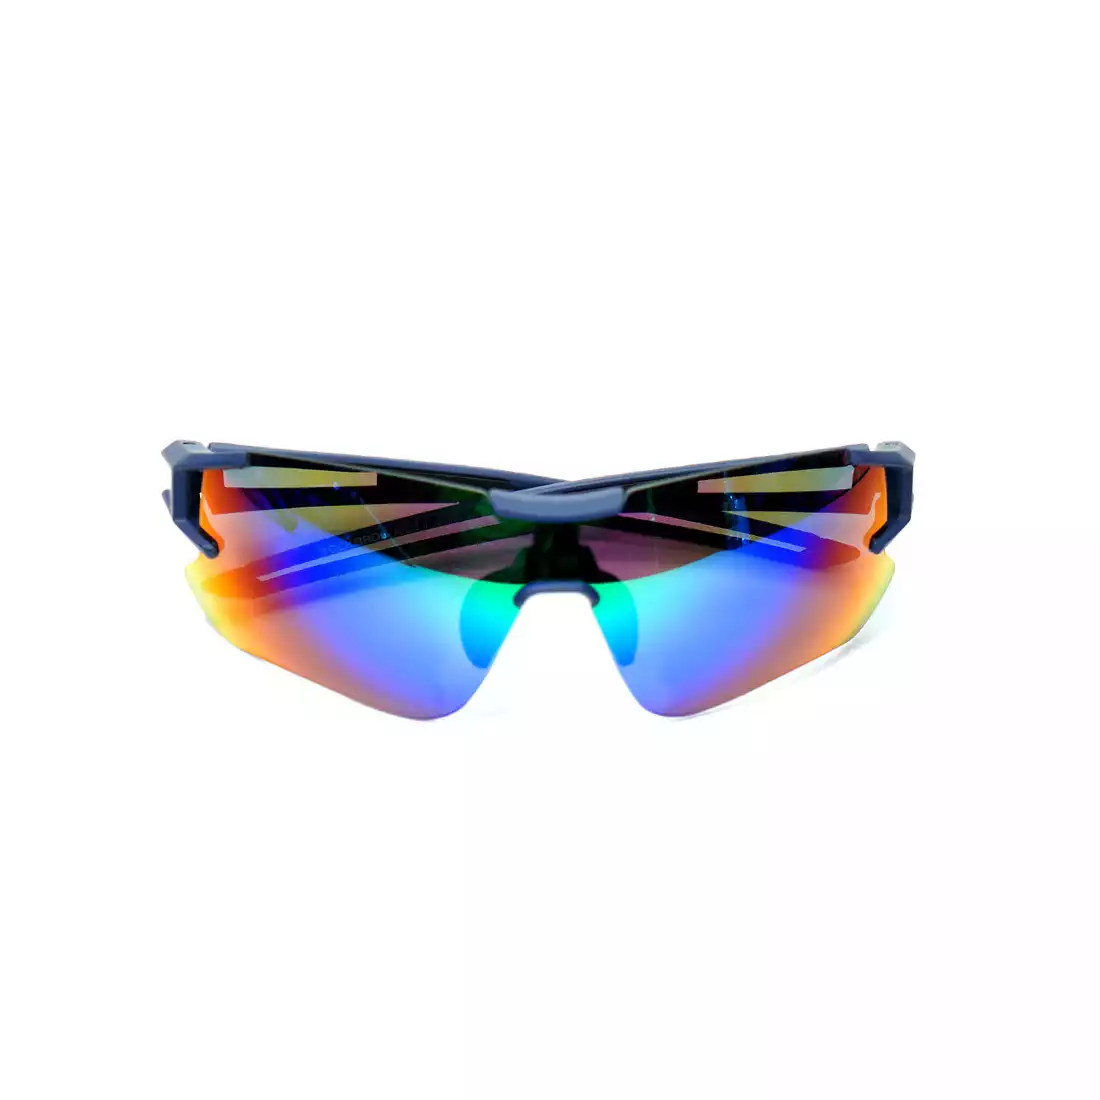 Rockbros 10129 okulary sportowe z polaryzacją + wkładka korekcyjna black-blue 